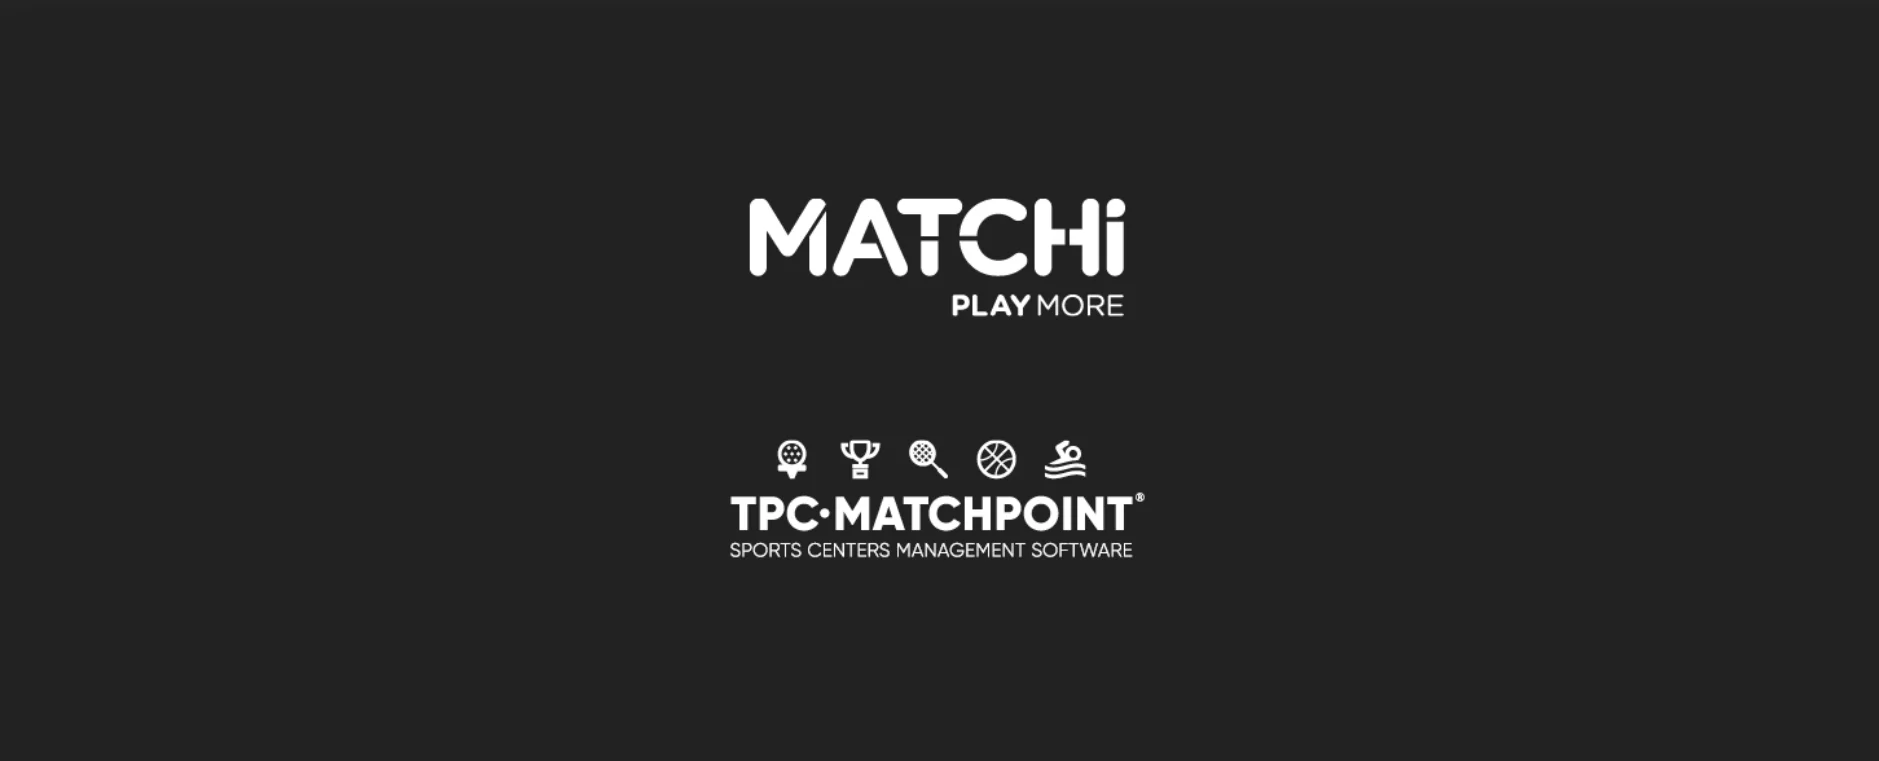 TPC Matchpoint współpracuje z MATCHi, tworząc jedną z największych sieci sportów rakietowych na świecie!